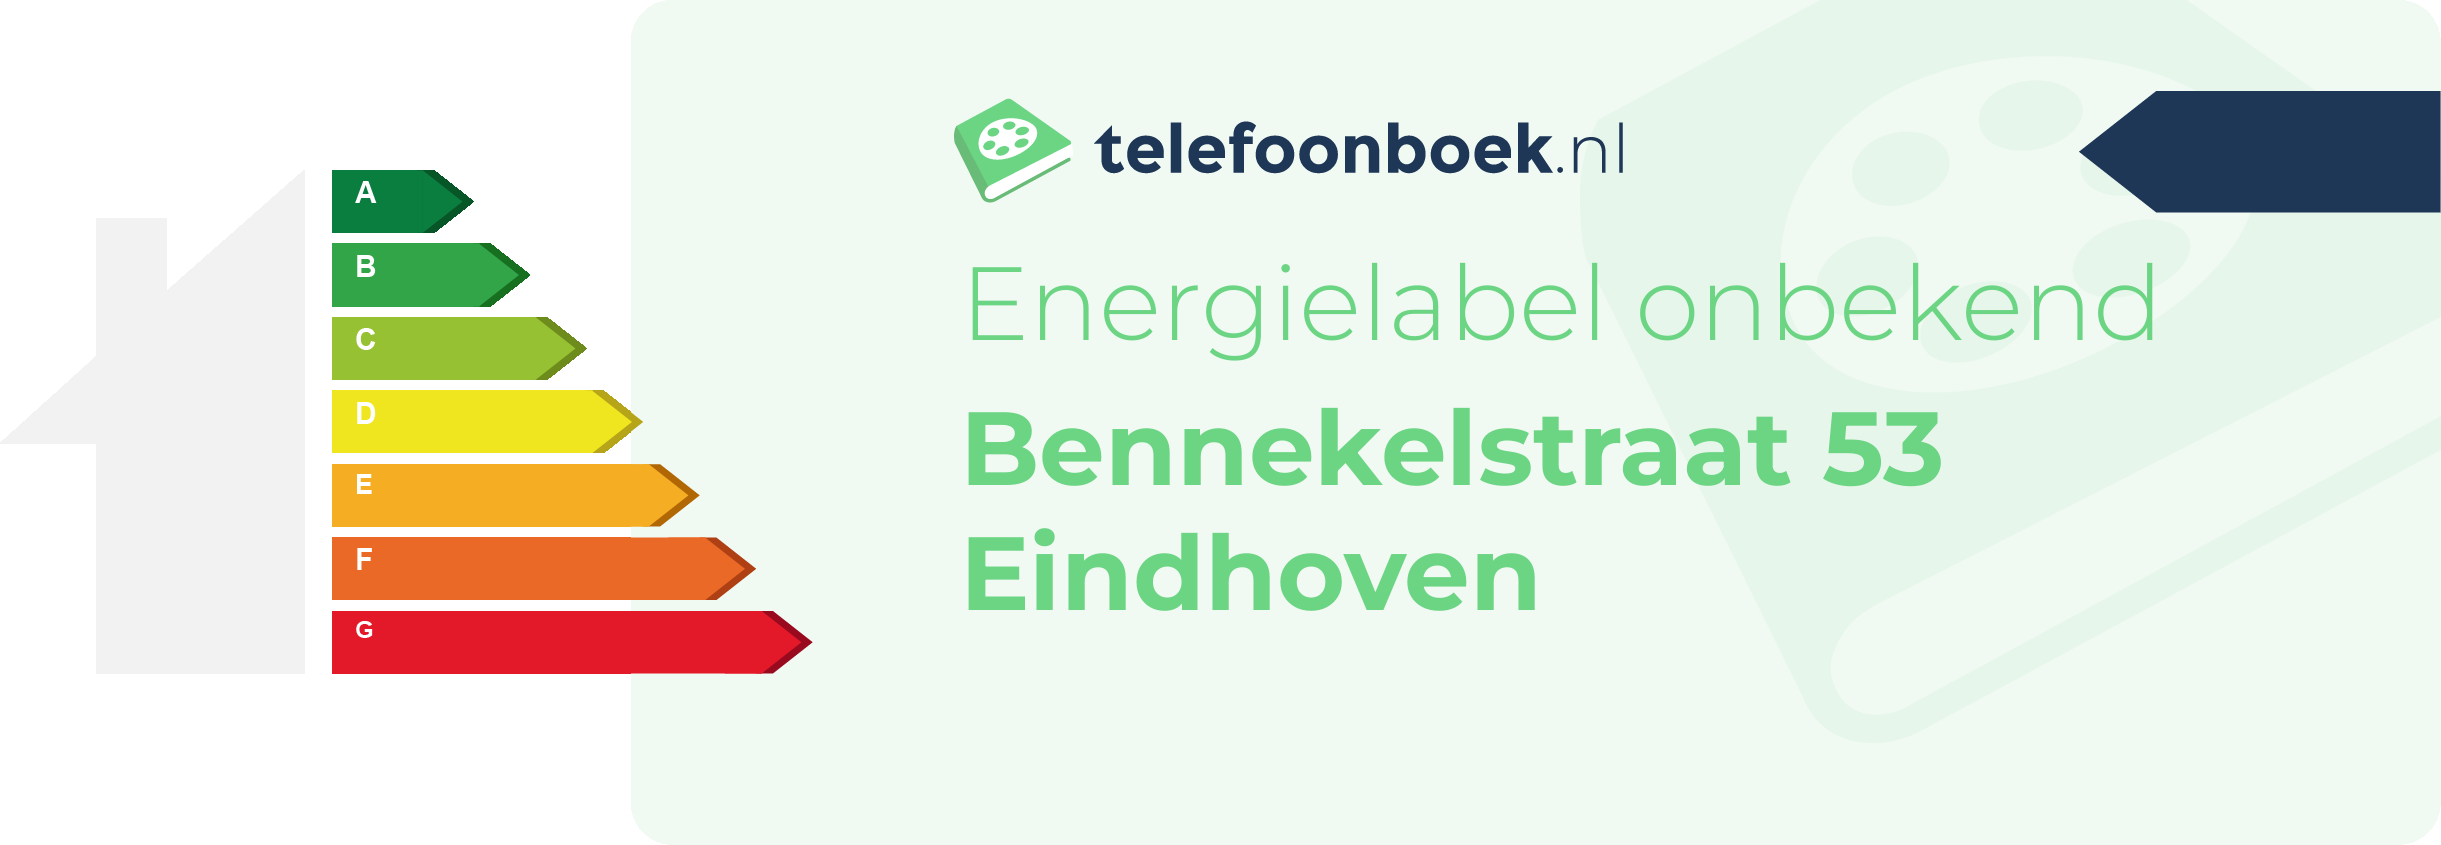 Energielabel Bennekelstraat 53 Eindhoven